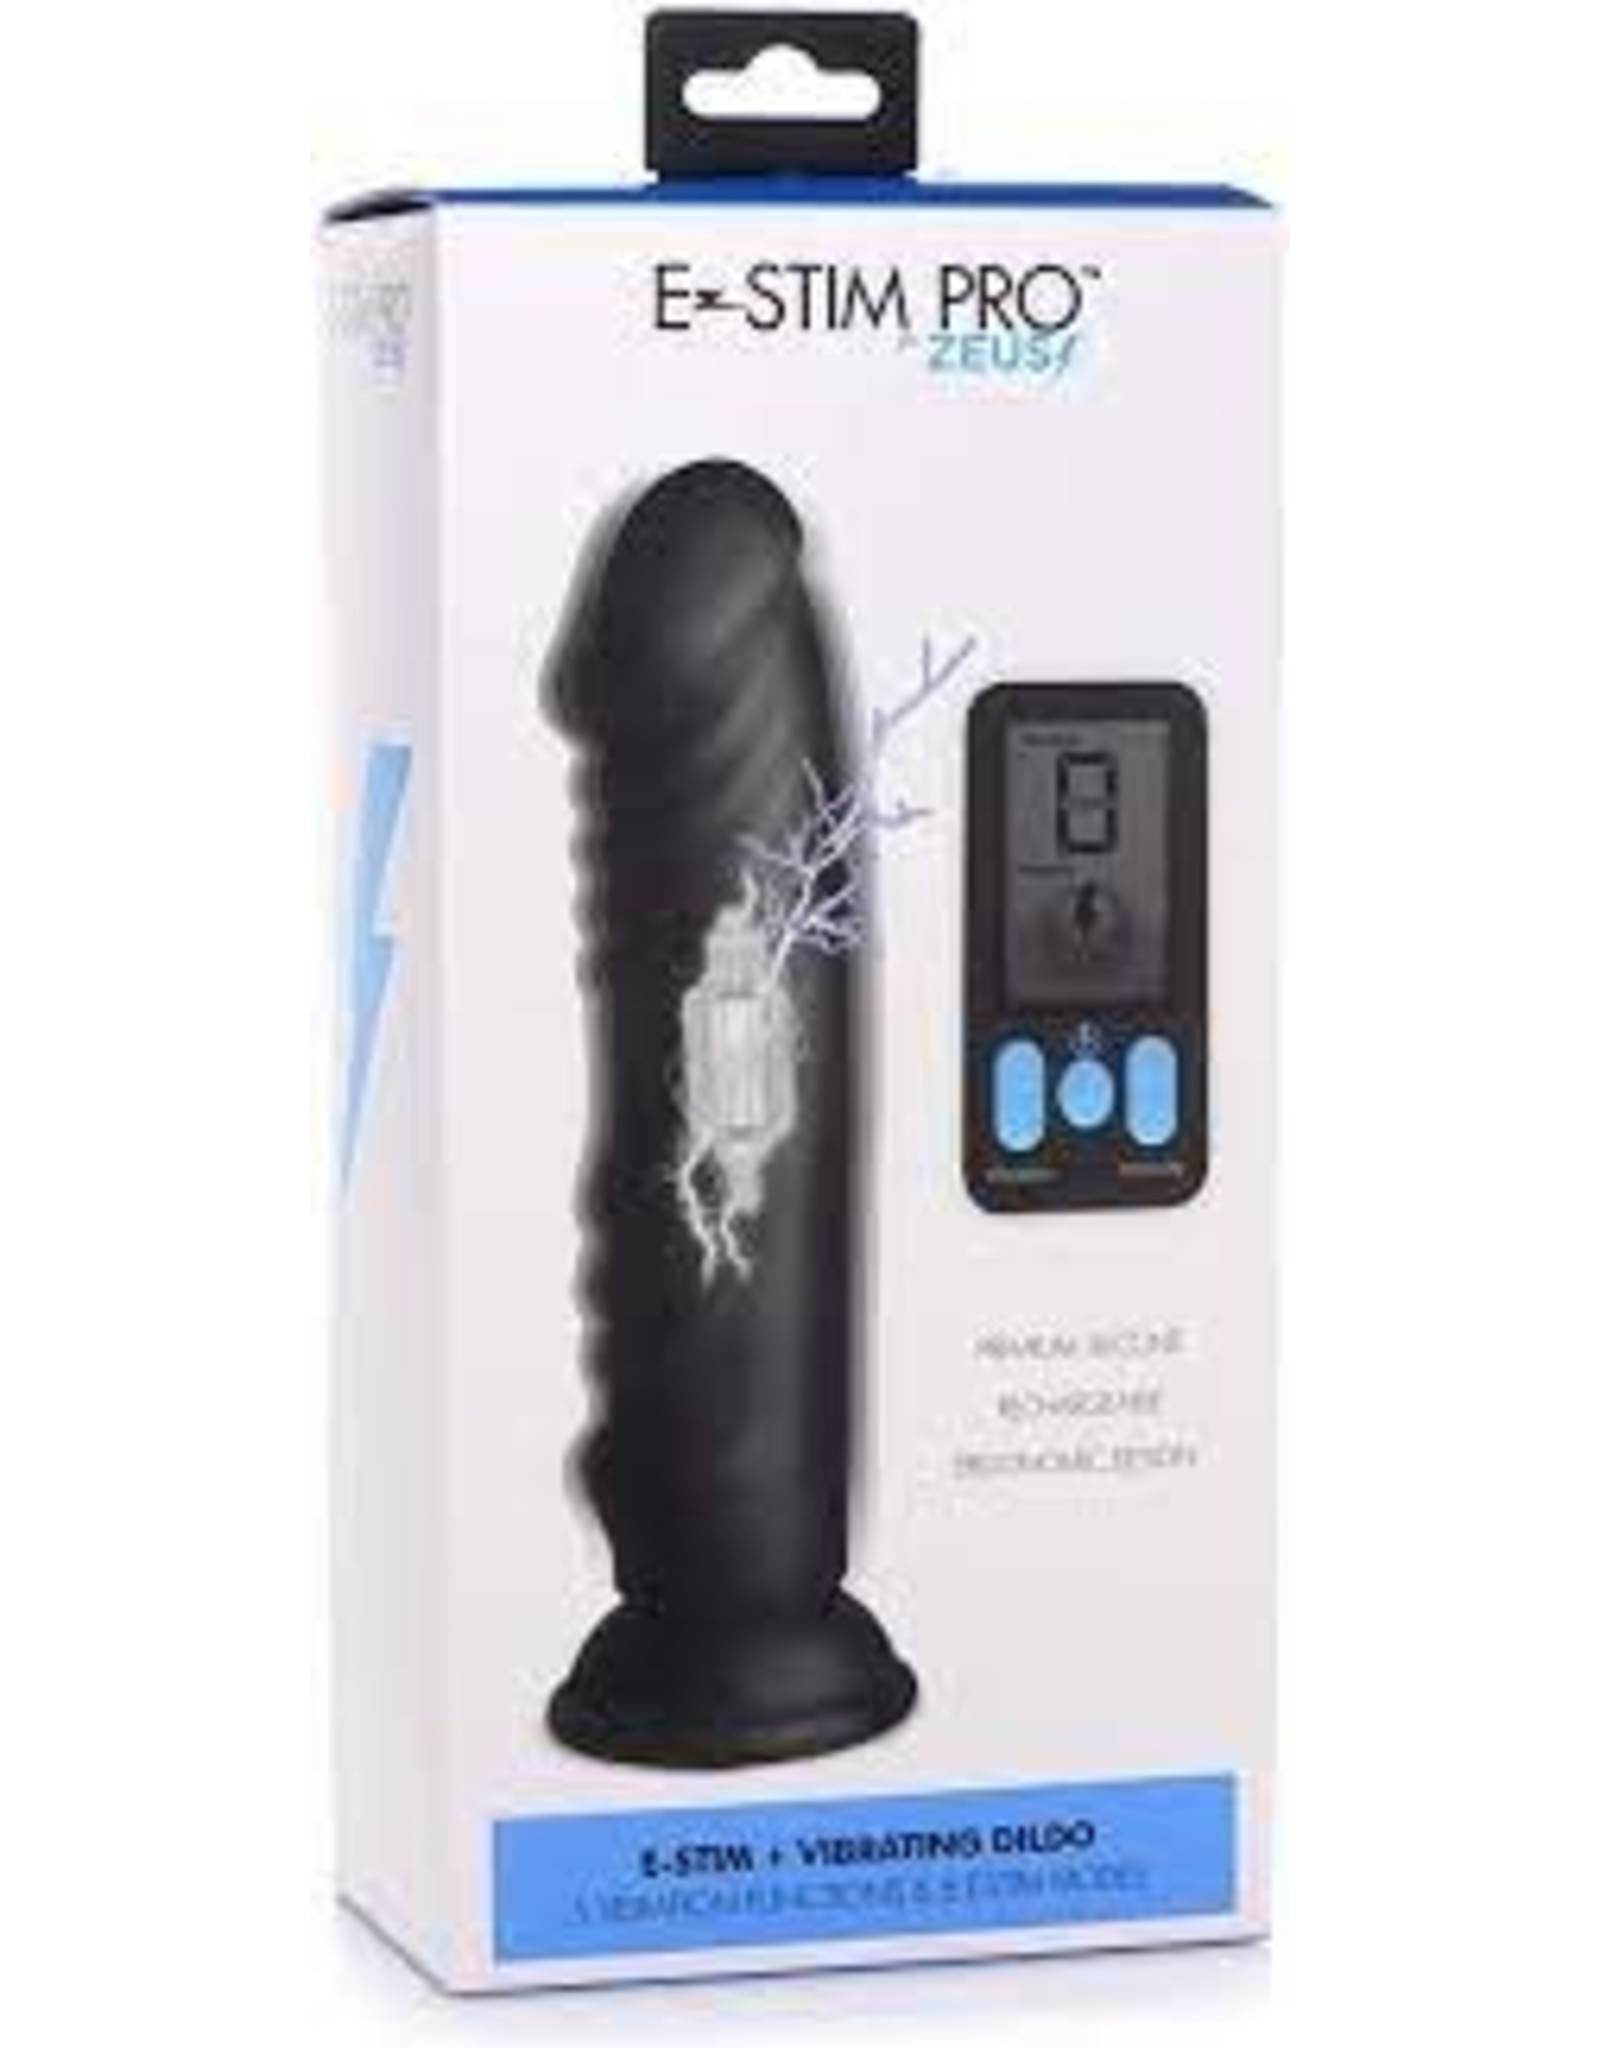 XR Brands E-Stim Pro Vibrating Dildo - Black